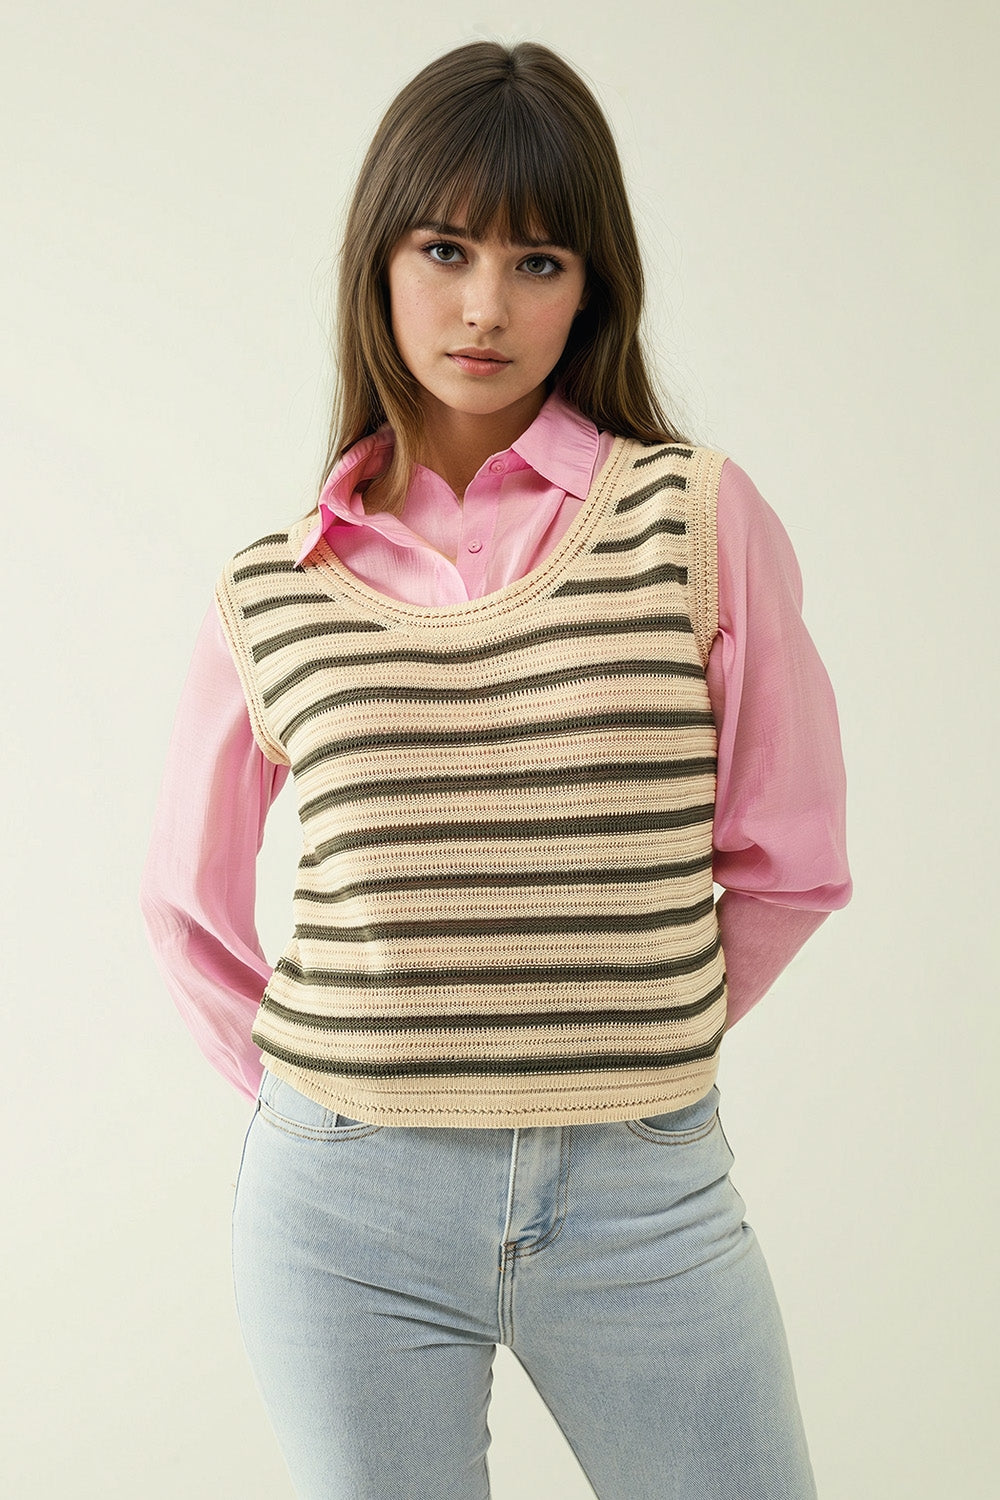 Q2 Cream sleeveless knit top with khaki stripes